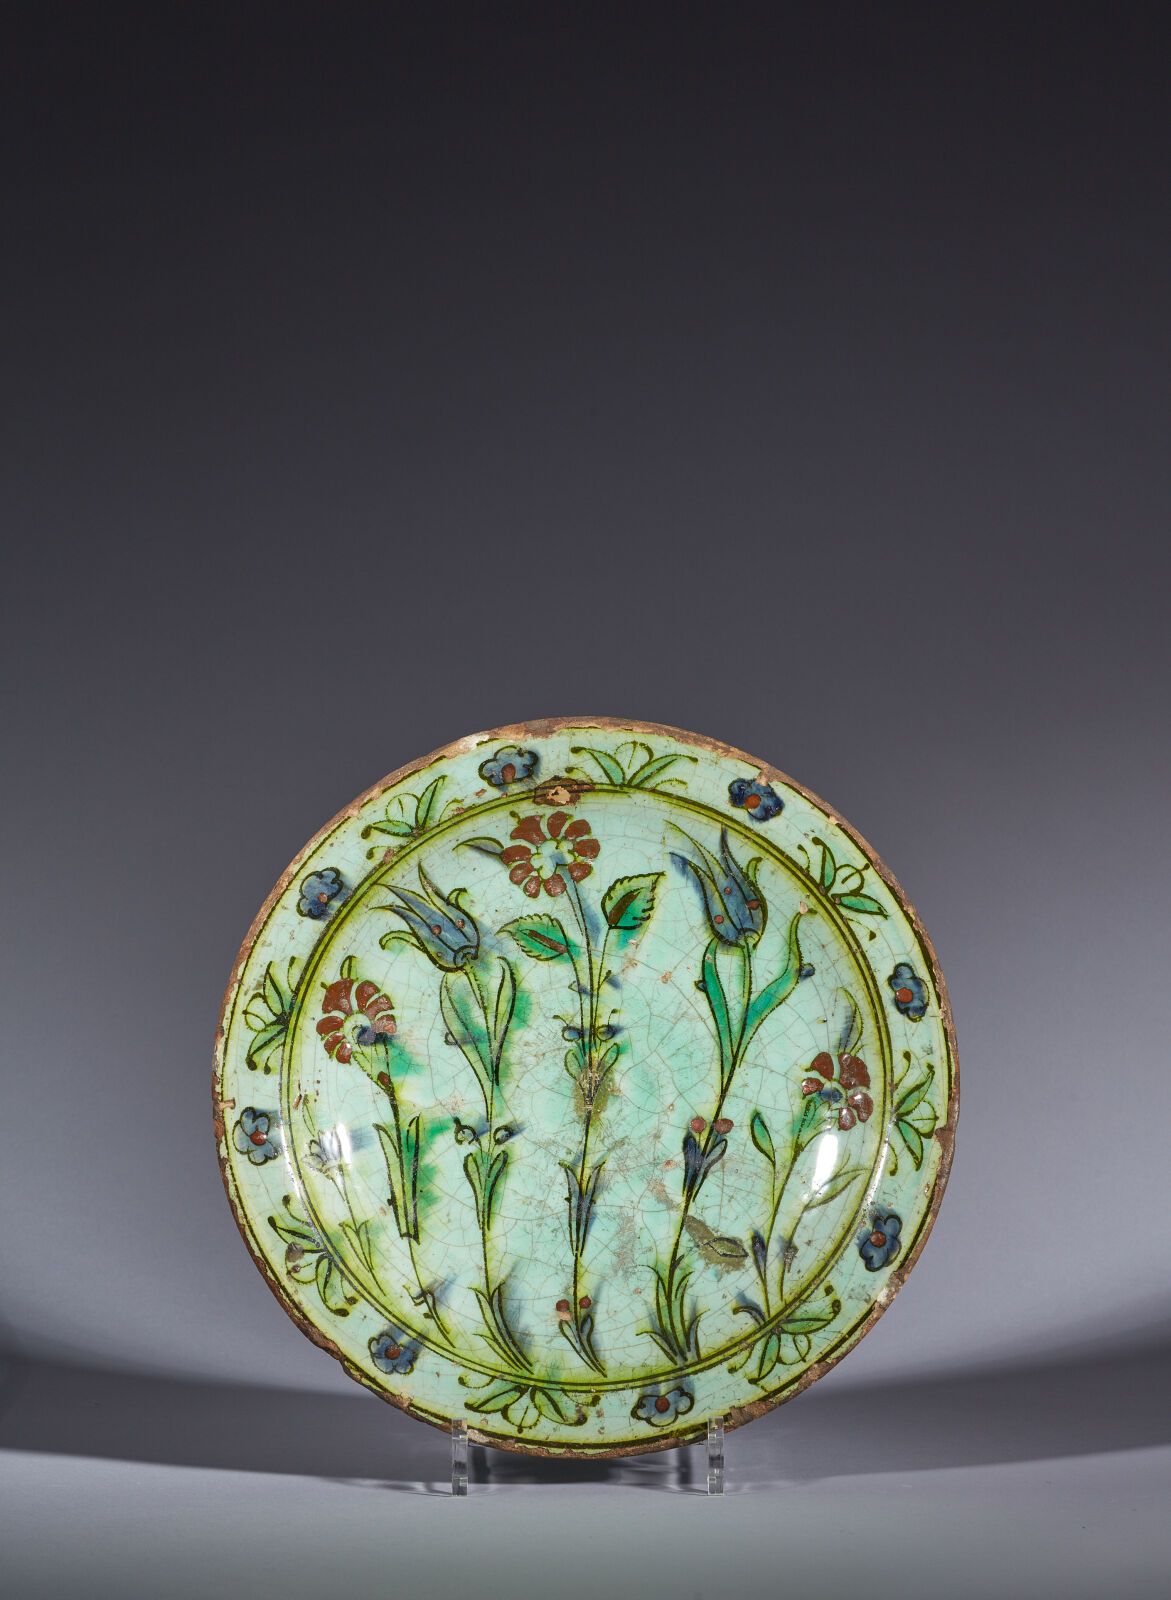 Null TURQUIE ottomane, Iznik, XVIIe siècle
Plat à décor floral
Plat en céramique&hellip;